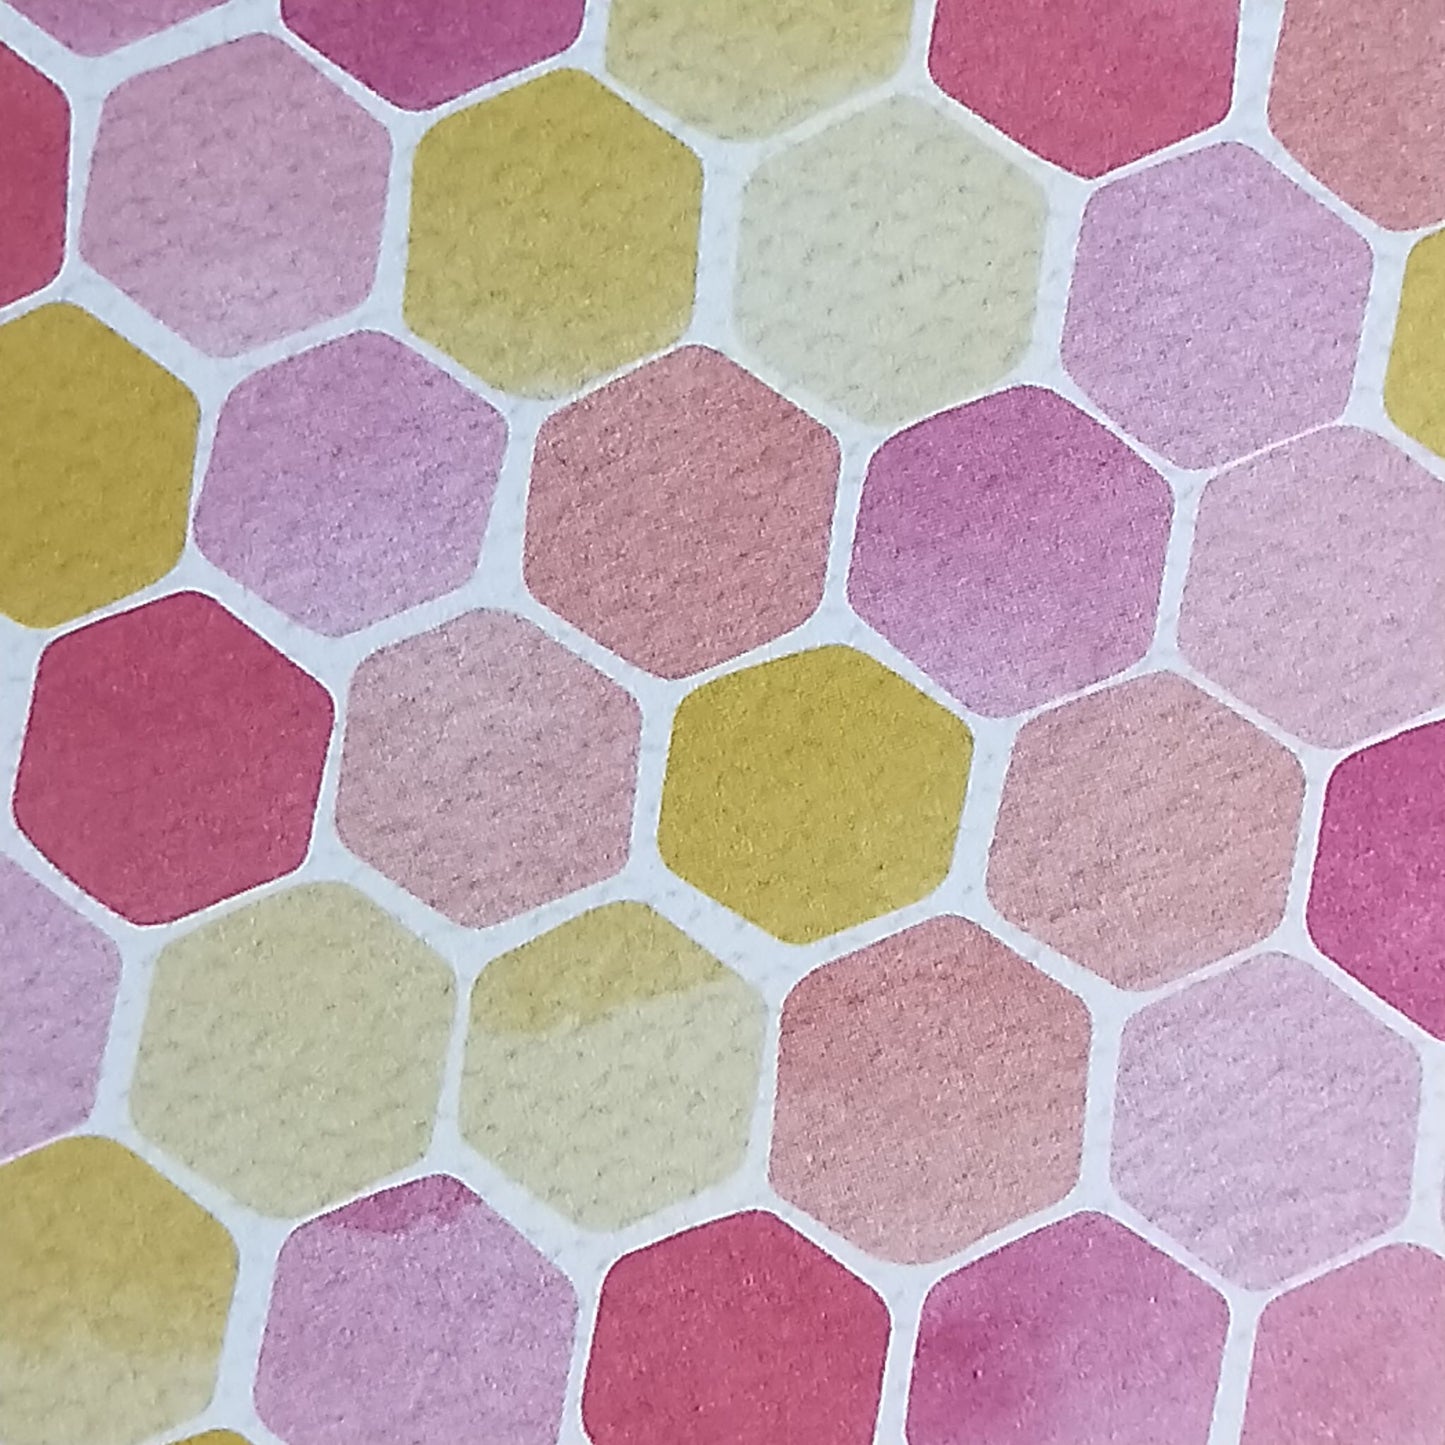 Wilddori 40 sheet Blank Insert - Hexagon